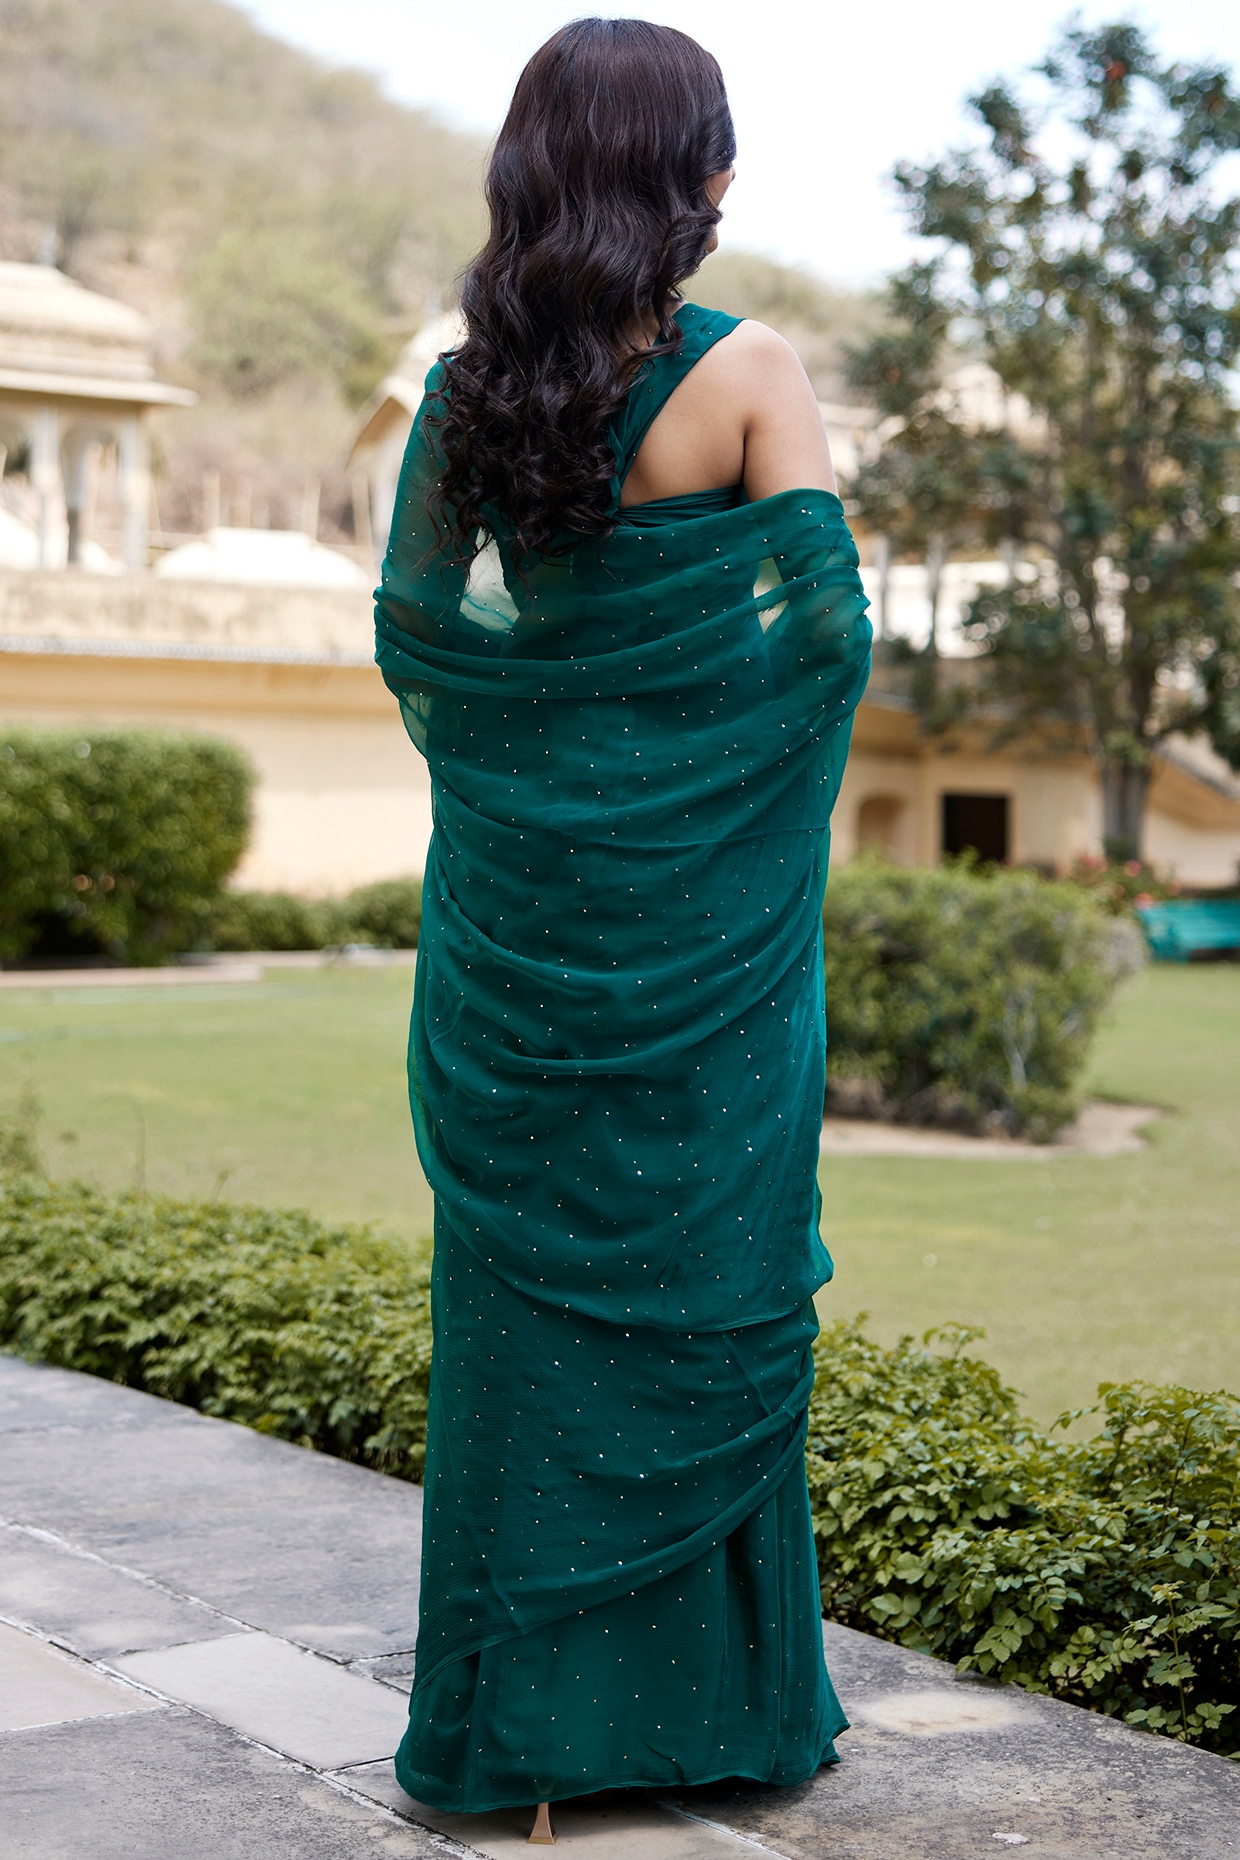 Bottle Green Satin Saree | Stylish sarees, Sarees for girls, Designer saree  blouse patterns